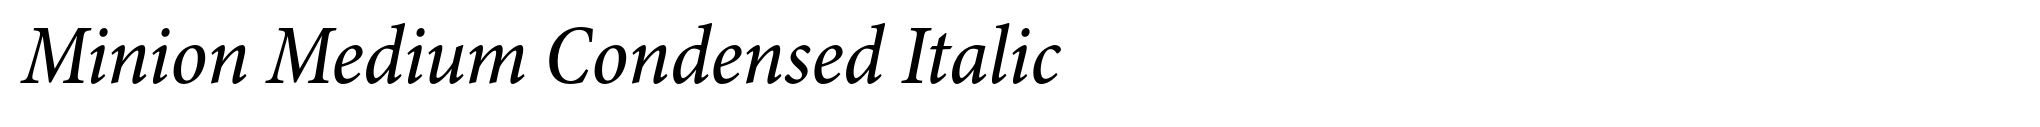 Minion Medium Condensed Italic image